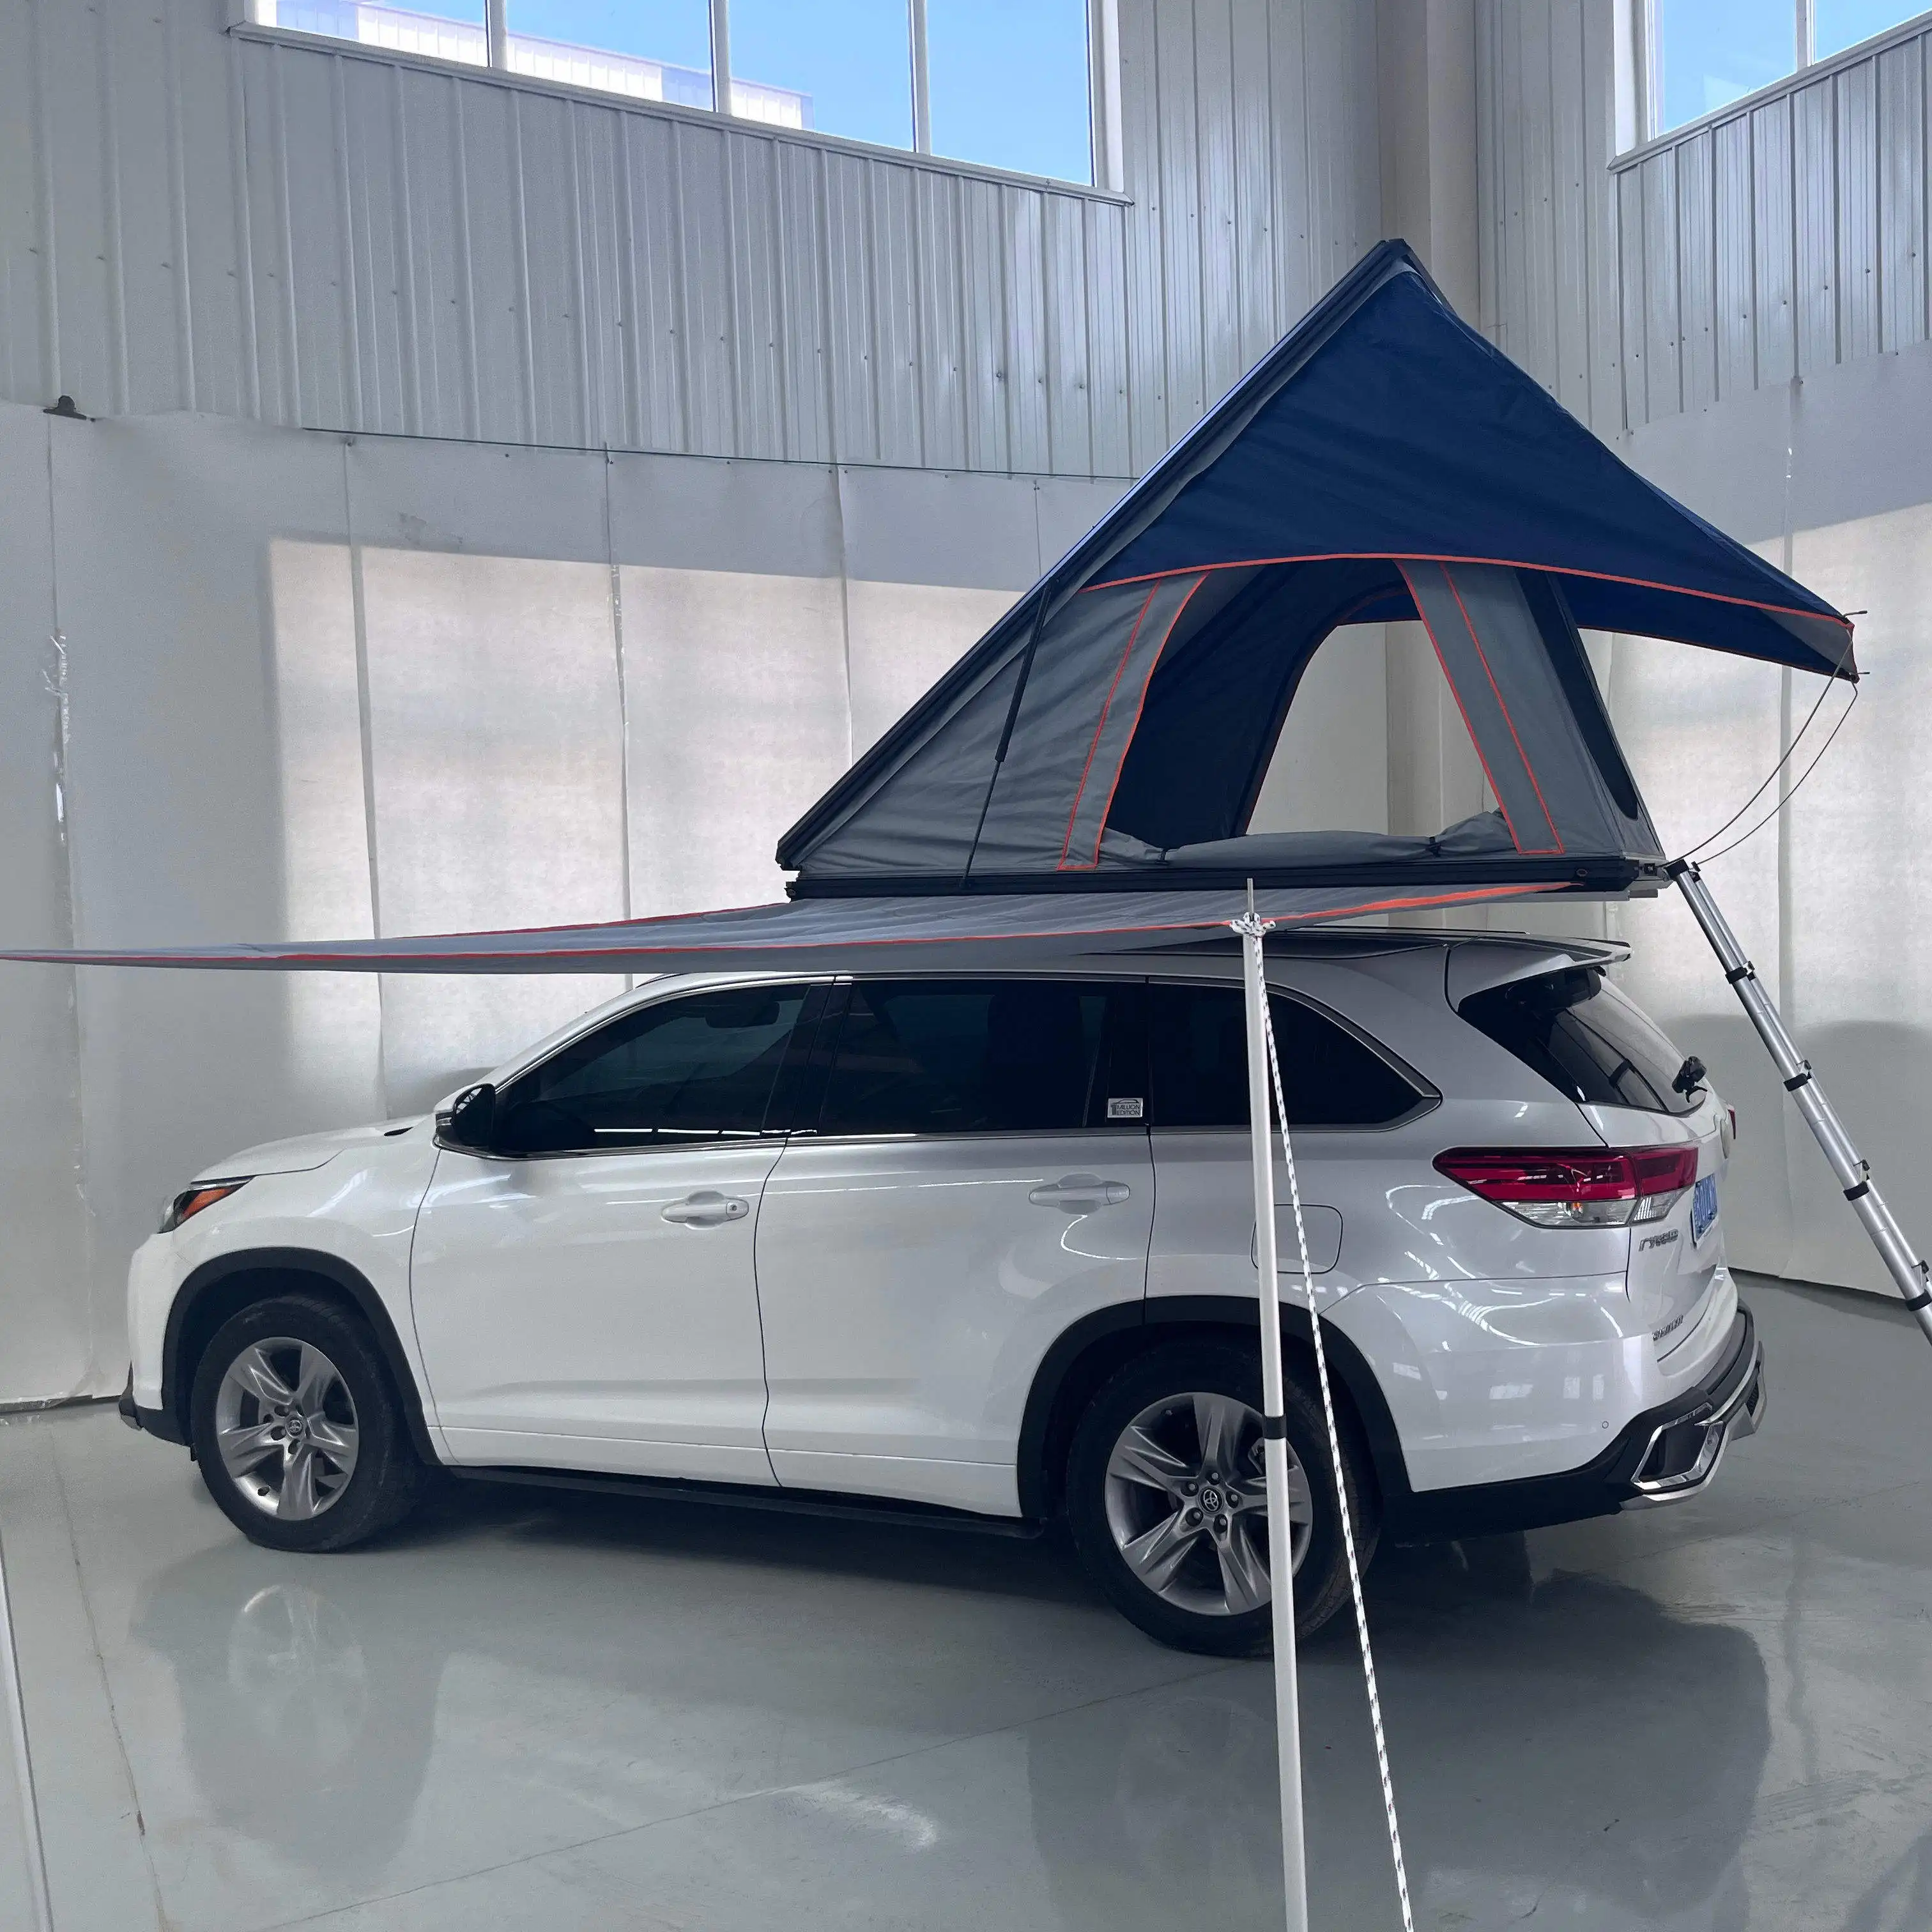 خيمة من الألومنيوم Dachzelt توفر من المصنع خيمة فوق سقف السيارة خيمة خارجية ضد الماء للتخييم ذات هيكل صلب خيمة علوية